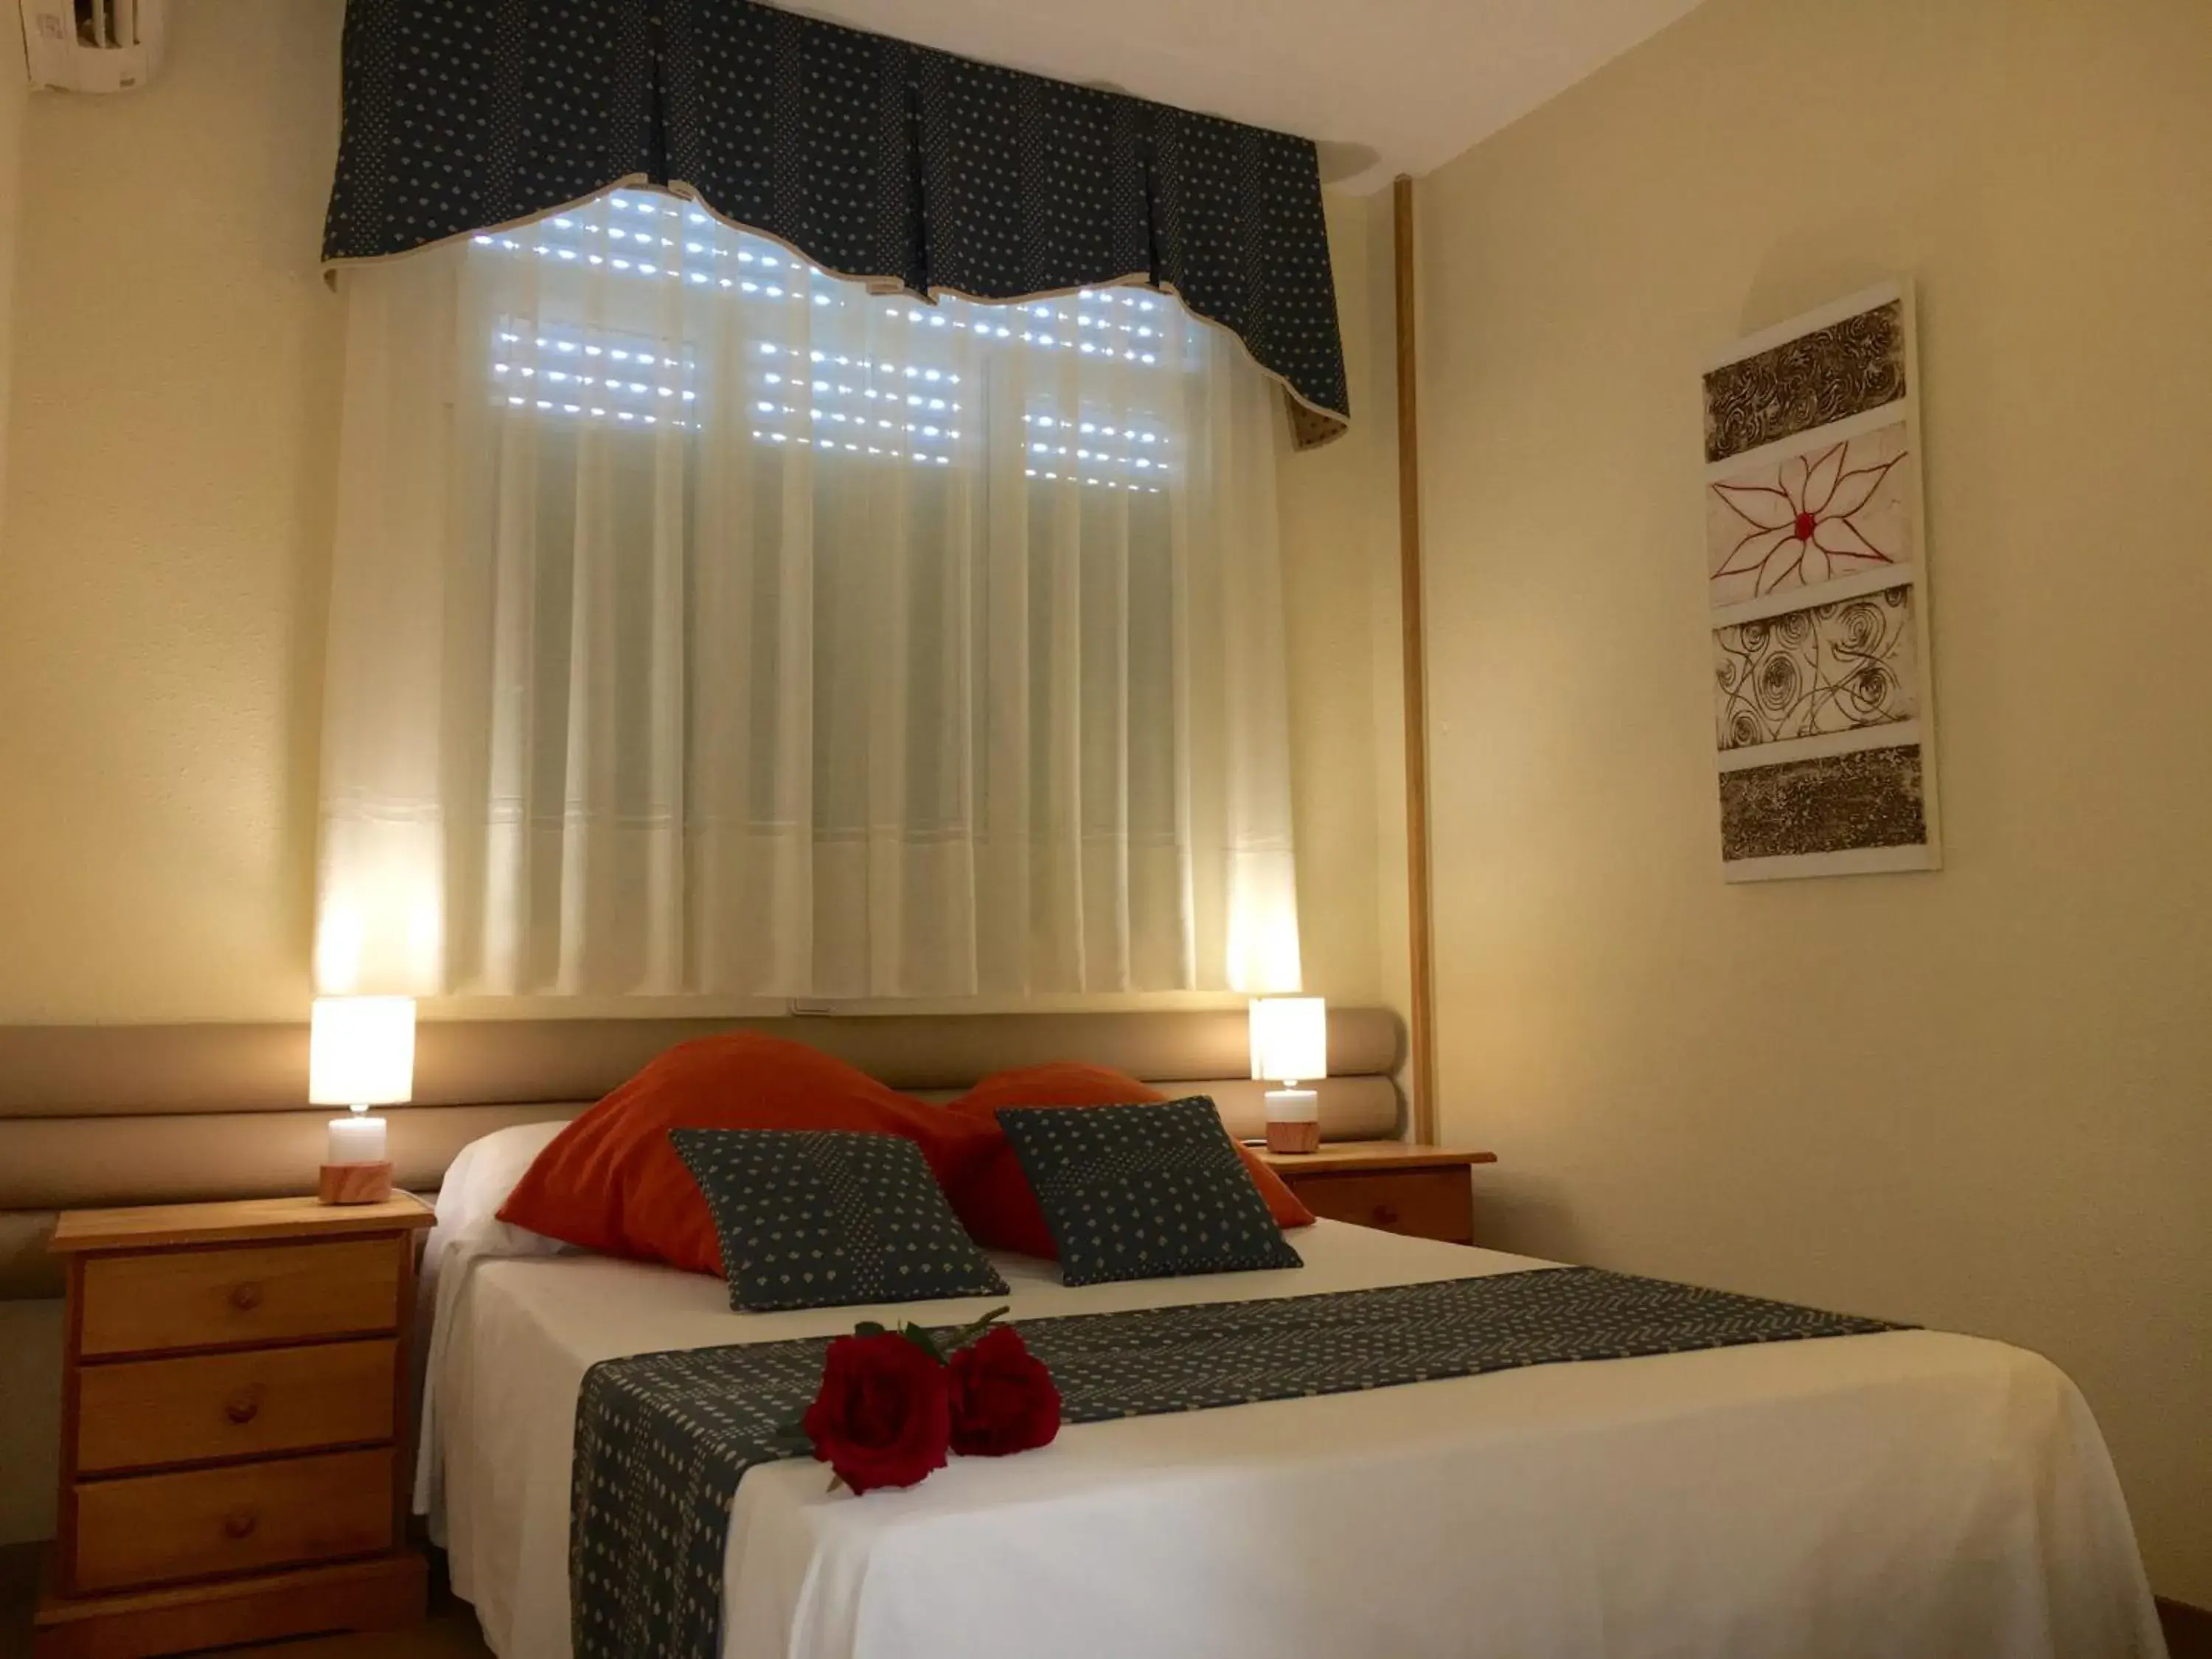 Bedroom, Room Photo in Hotel Cuatro Caños